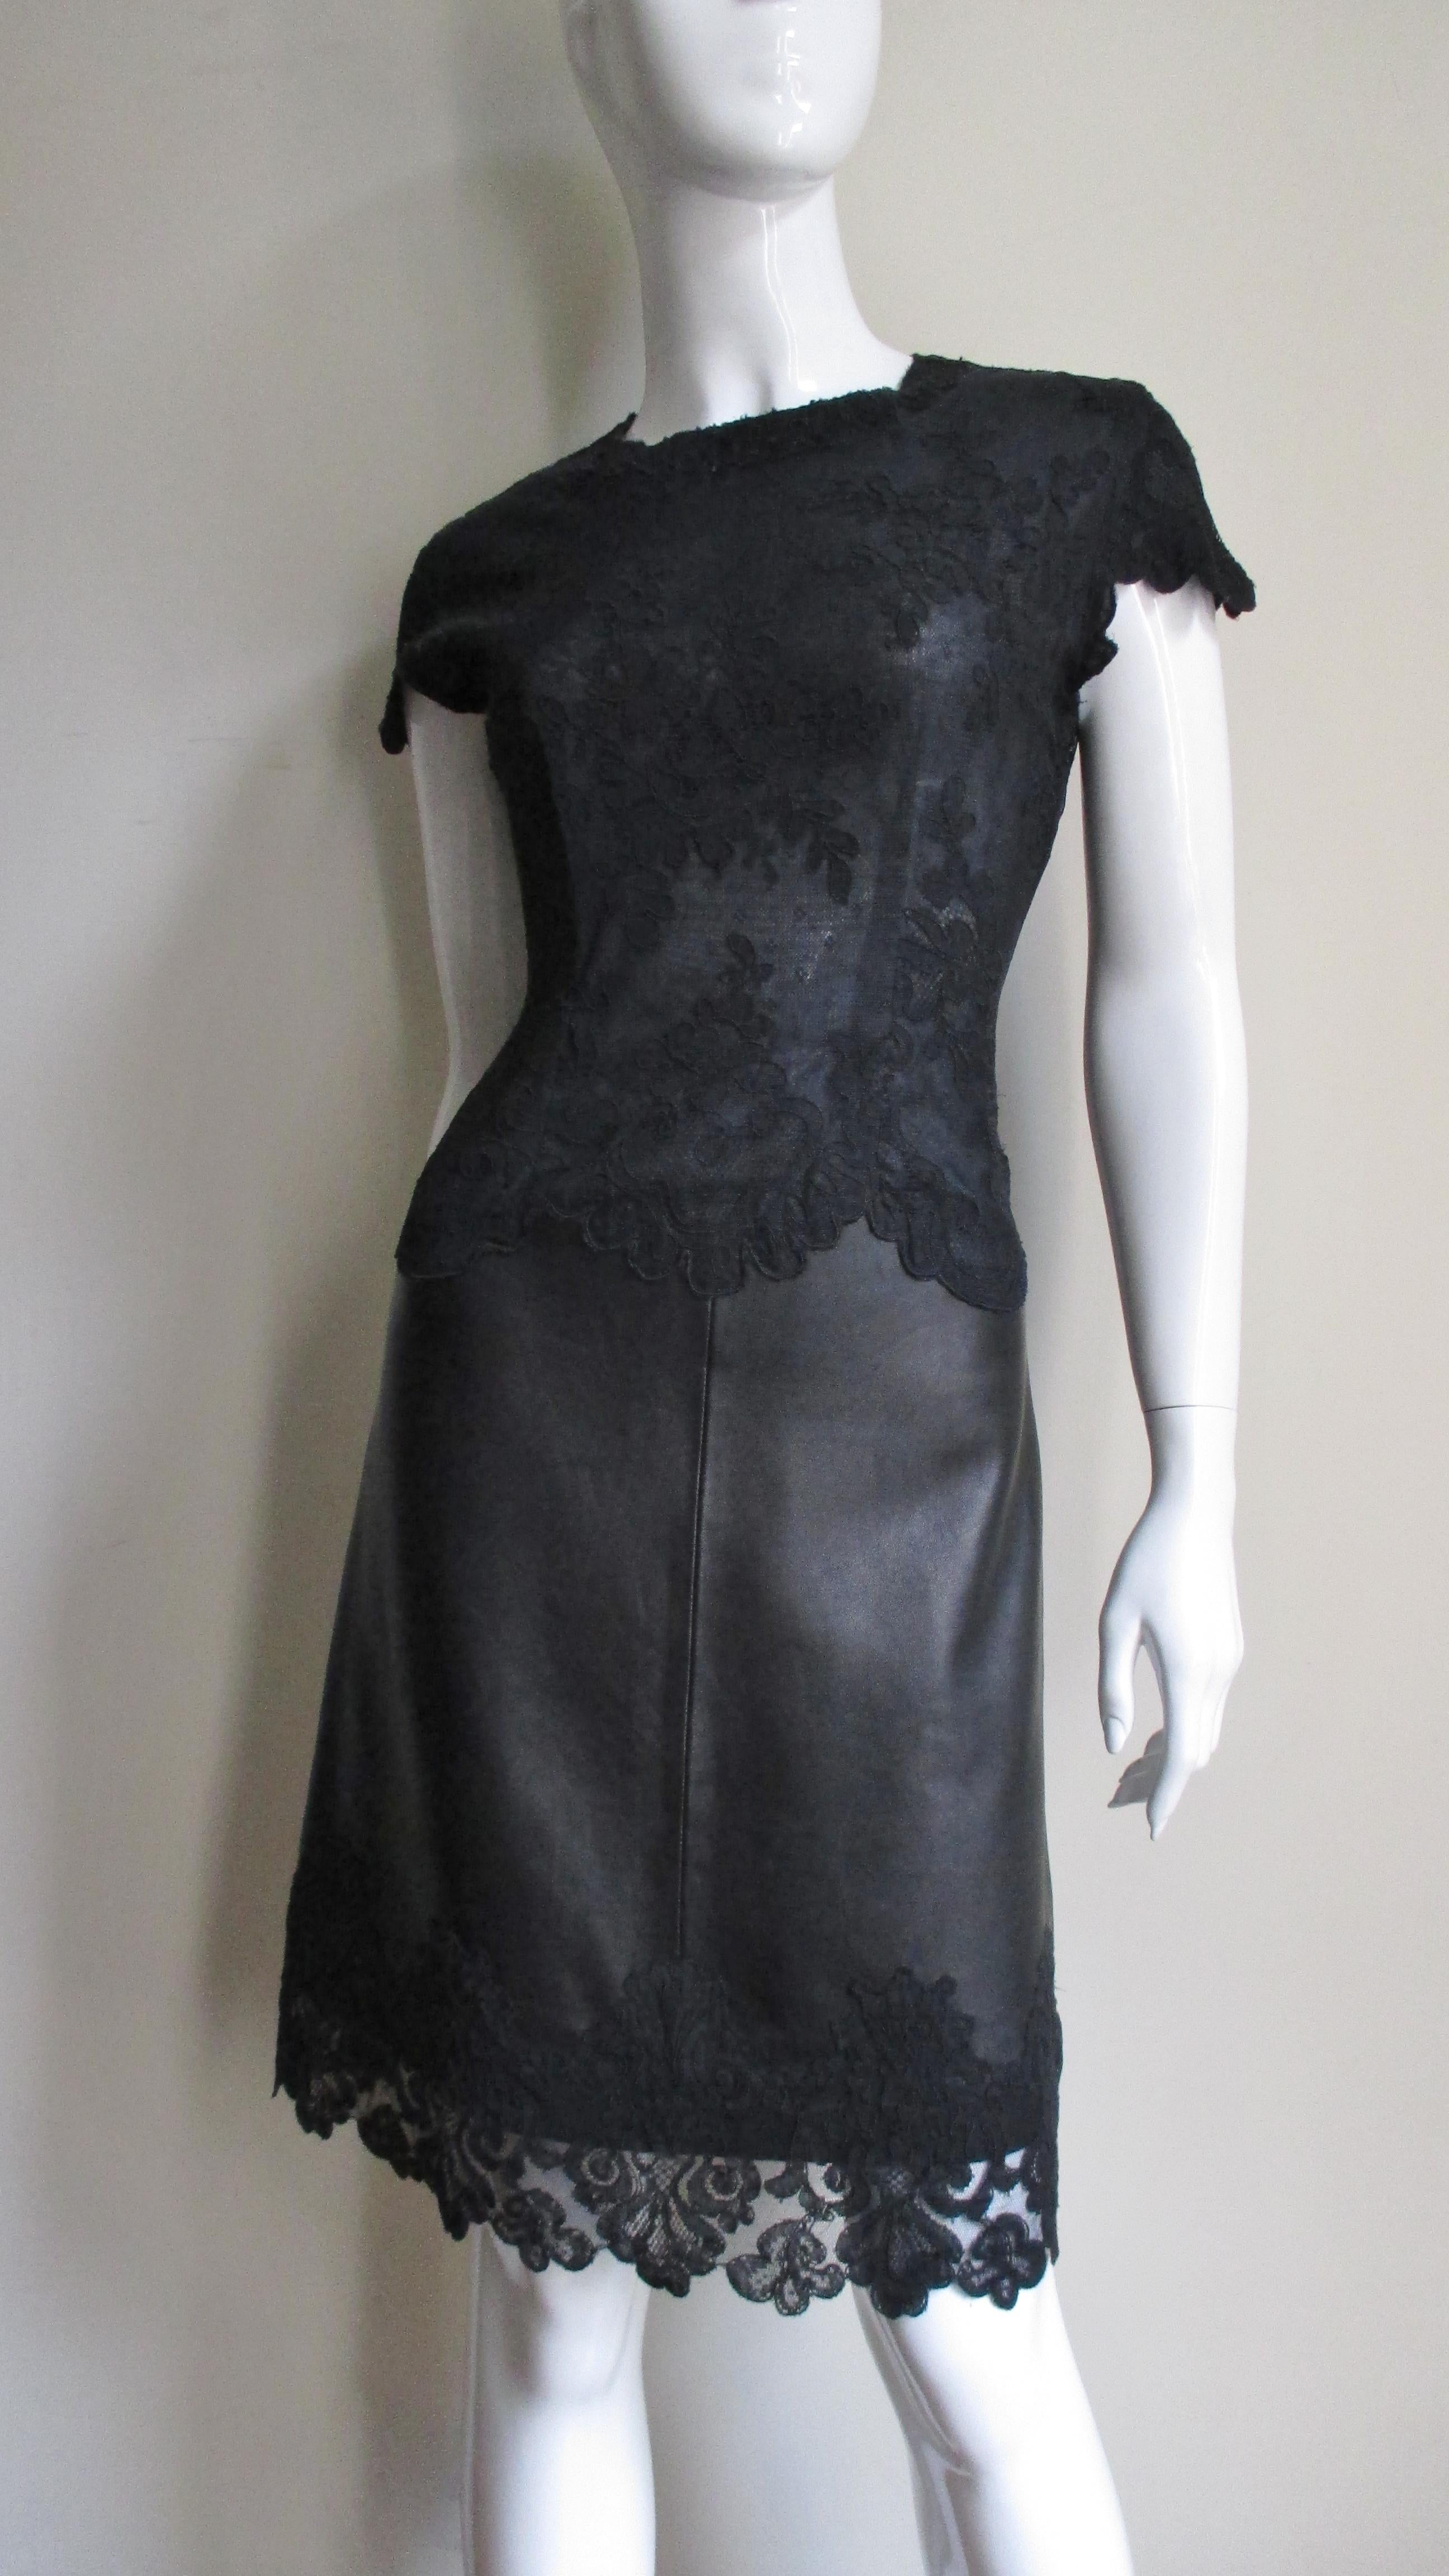 Une fabuleuse robe en cuir noir et dentelle de Gianni Versace.  Elle est dotée d'un corsage semi ajusté à manches courtes et d'un ourlet en dentelle à motifs floraux.  La partie en cuir de la jupe présente une ligne A subtile. La robe se ferme dans